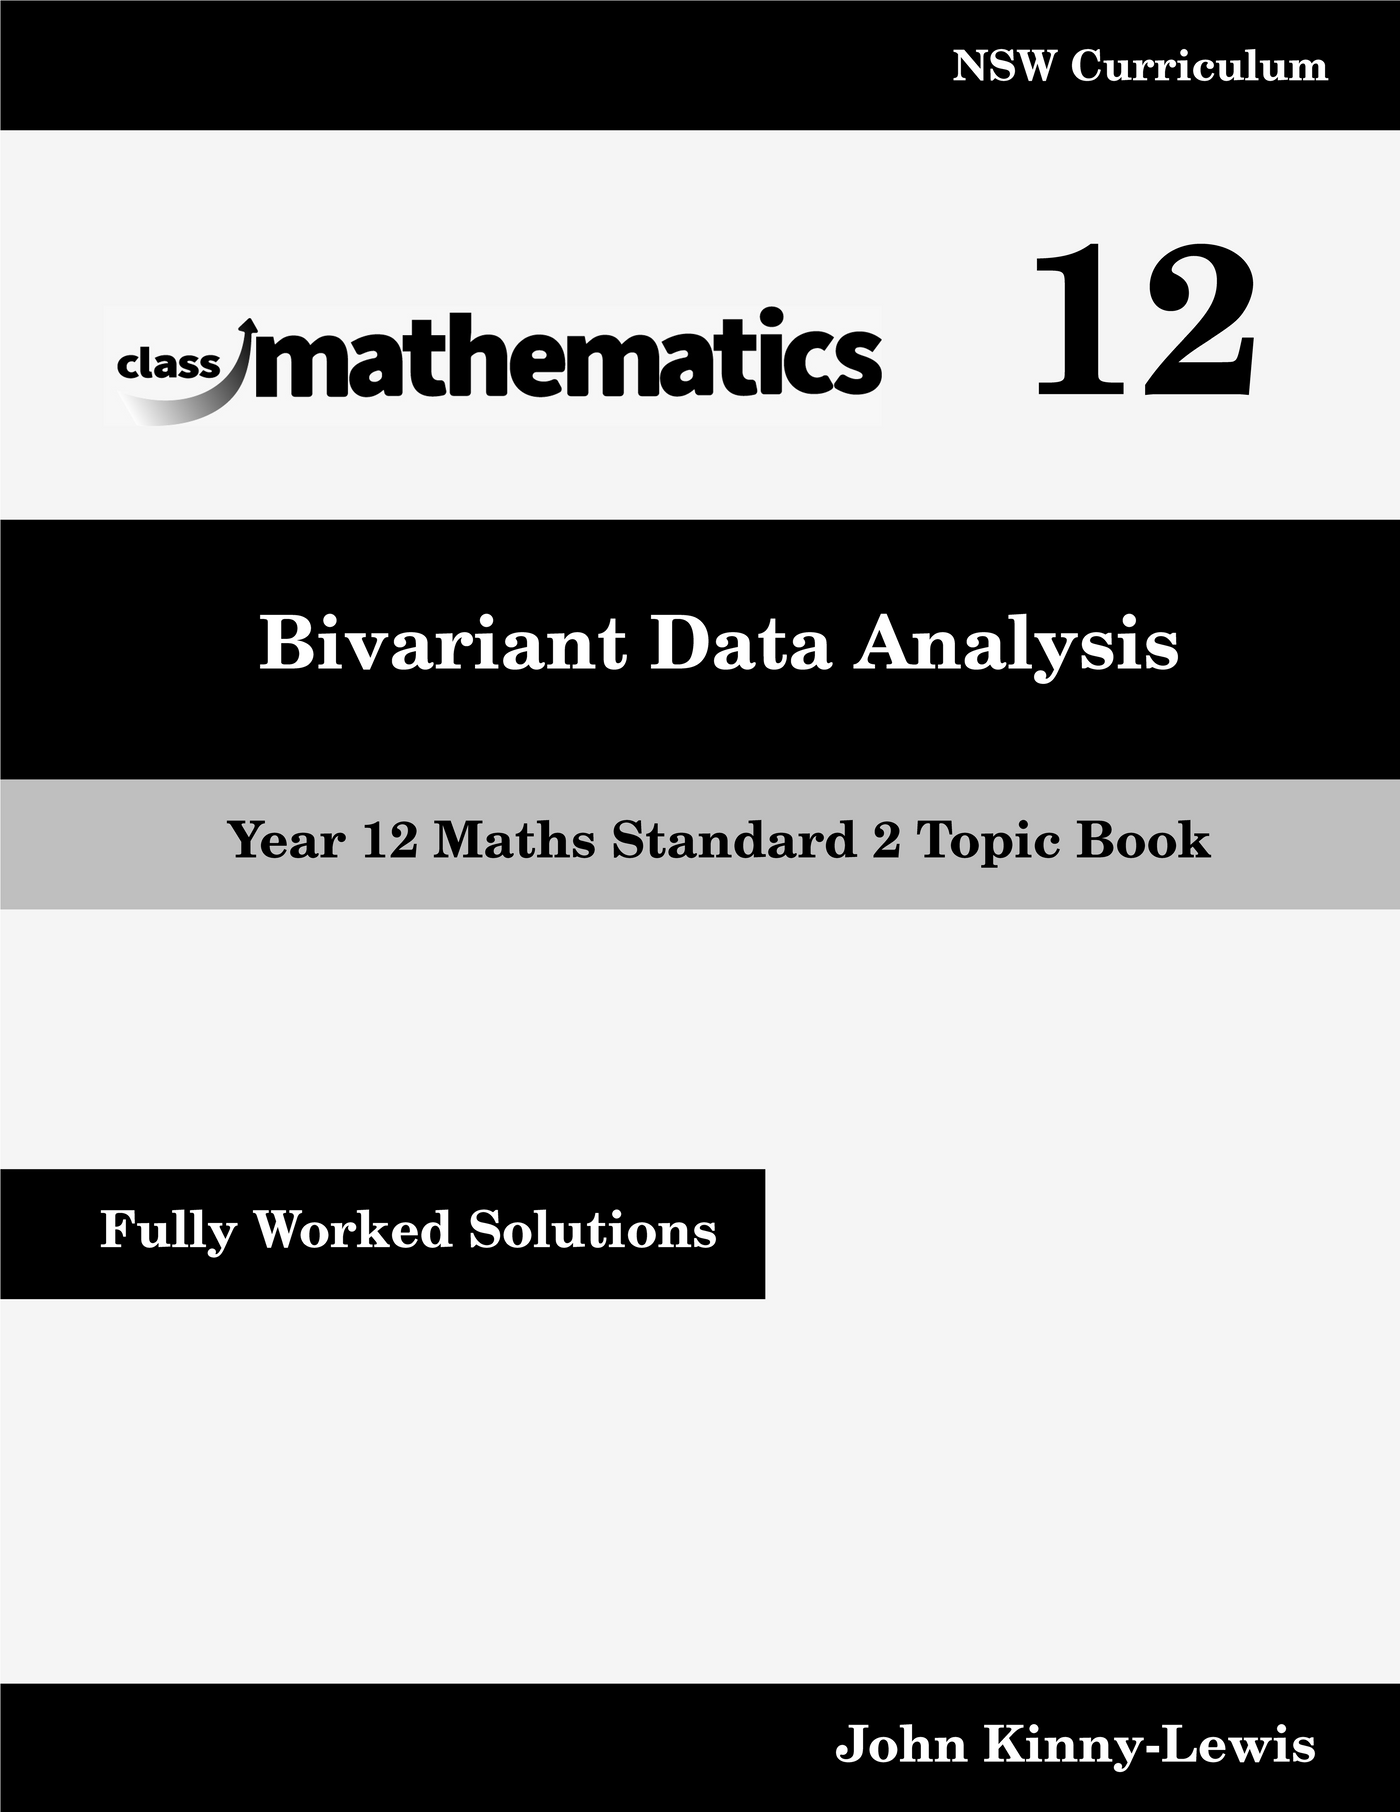 NSW Year 12 Maths Standard 2 - Bivariant Data Analysis